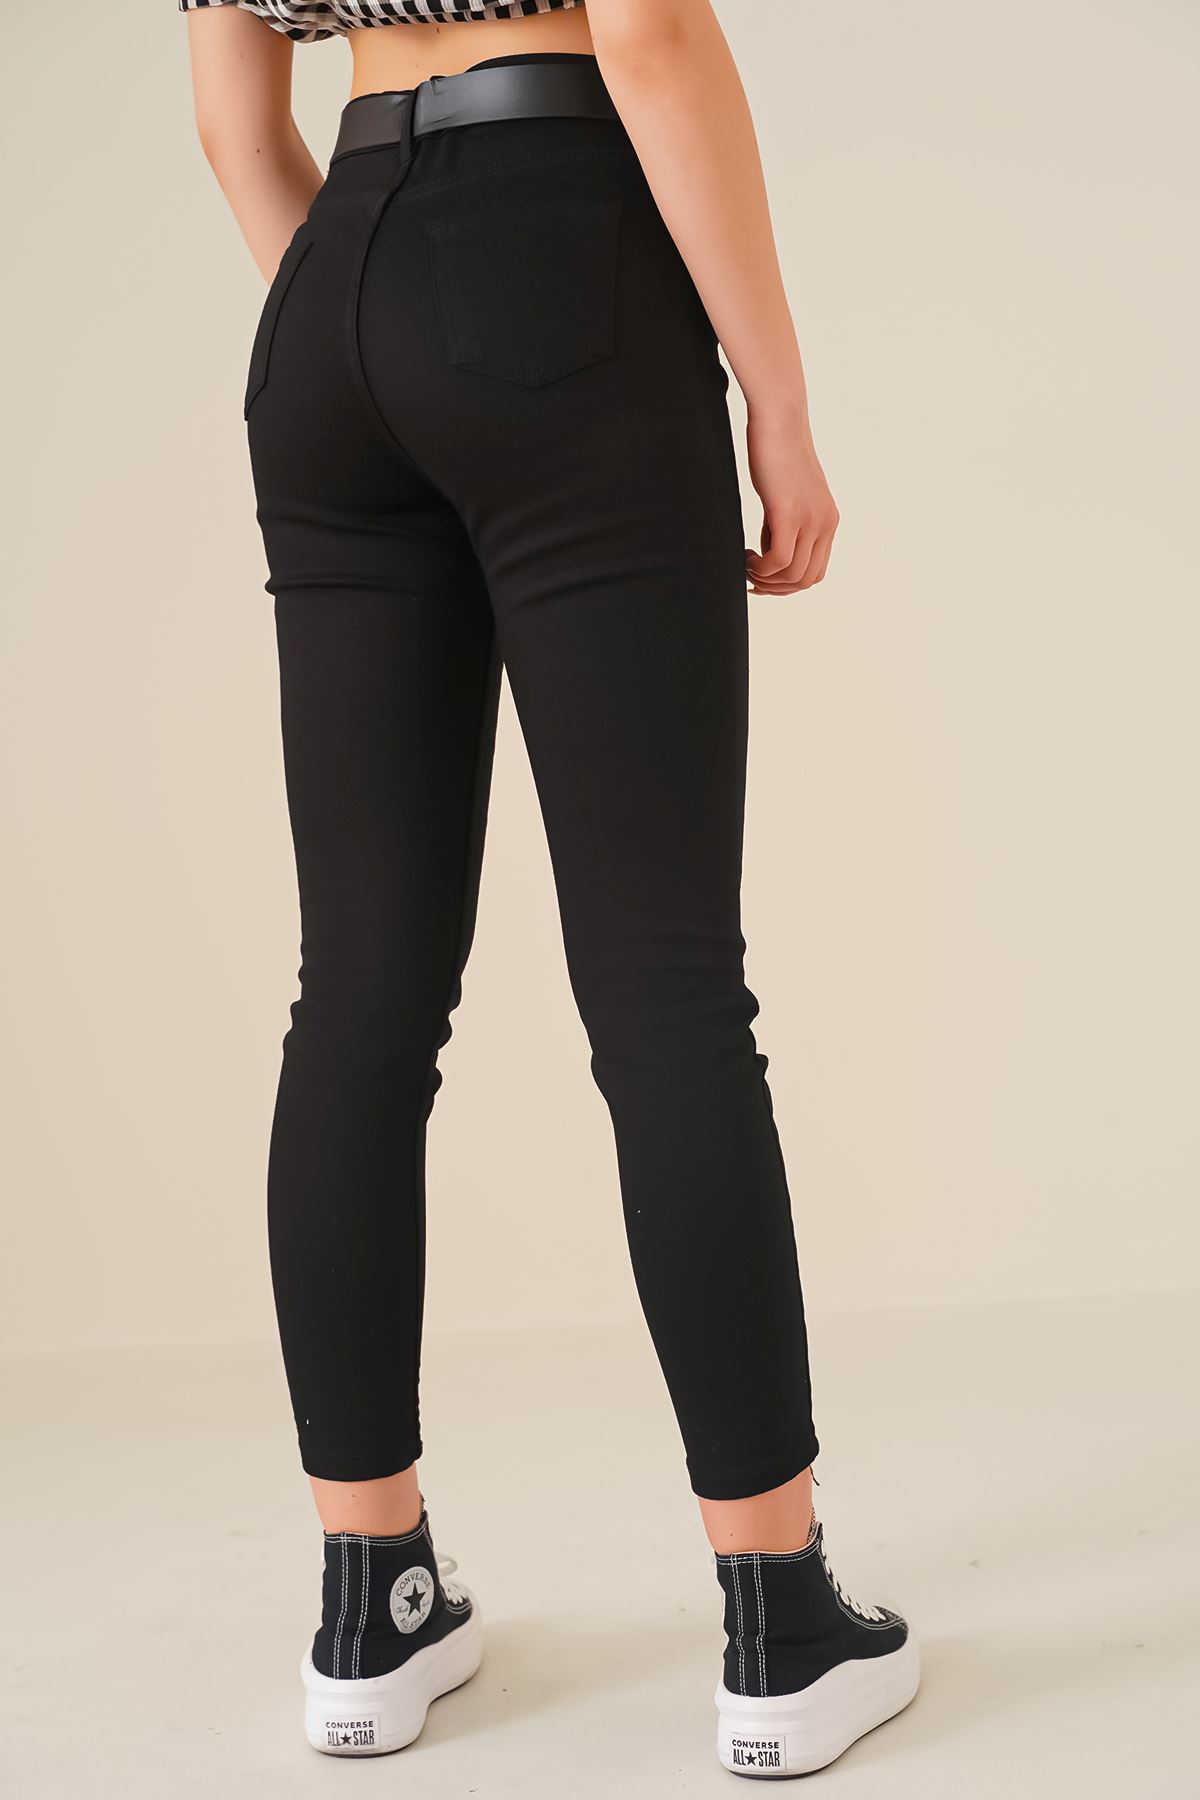 Giyinsen Kadın Siyah Kanvas Pantolon - 23YM21006322